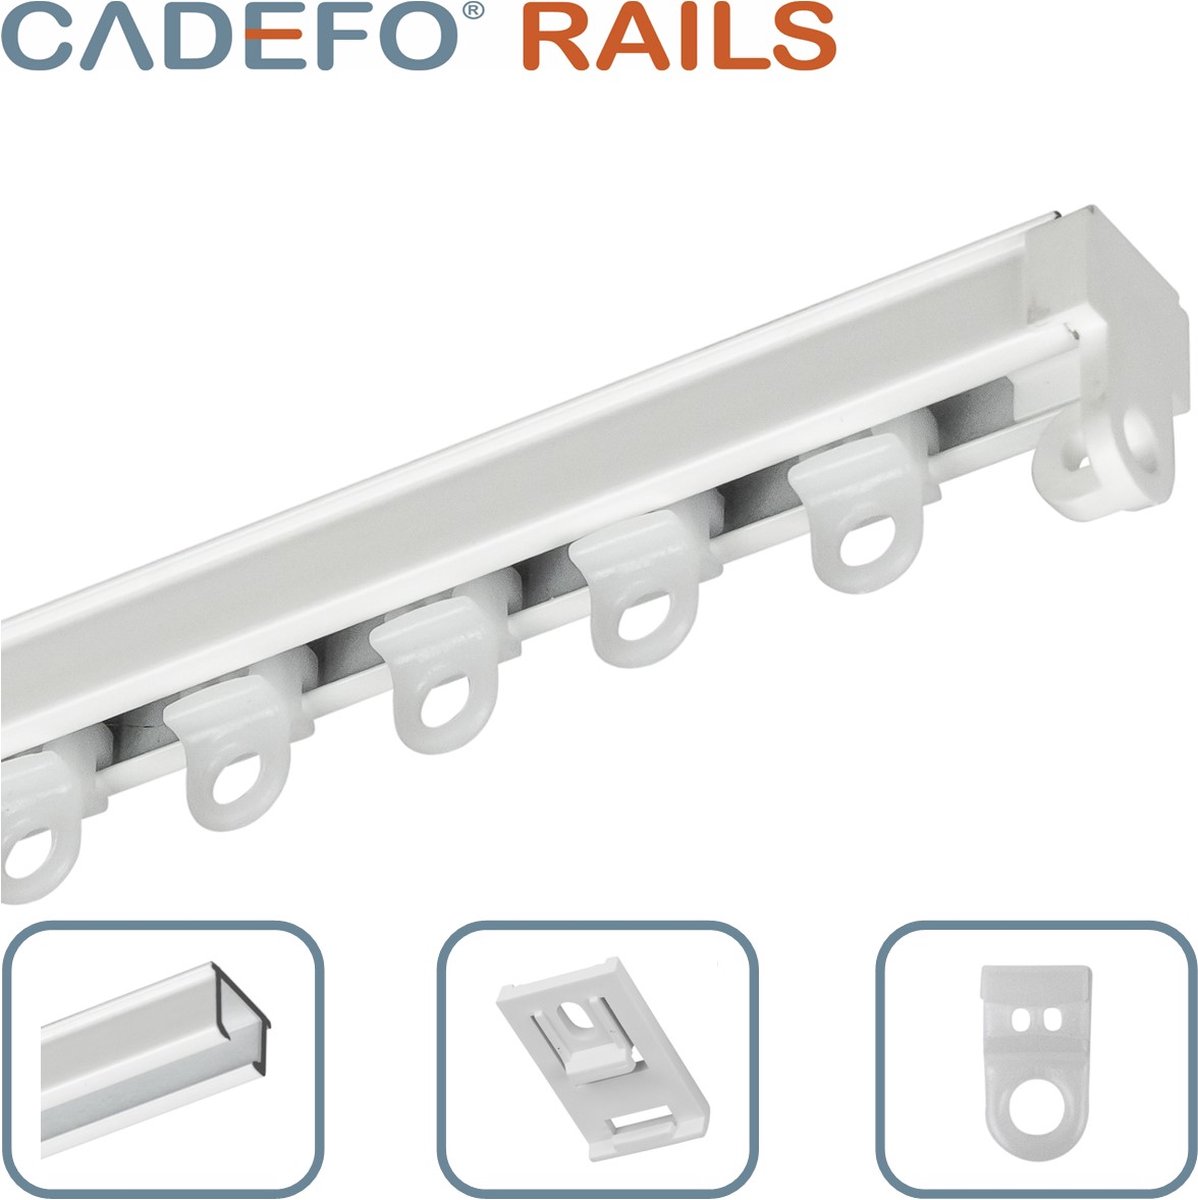 CADEFO RAILS (551 - 600 cm) Gordijnrails - Compleet op maat! - UIT 1 STUK - Leverbaar tot 6 meter - Plafondbevestiging - Lengte 576 cm